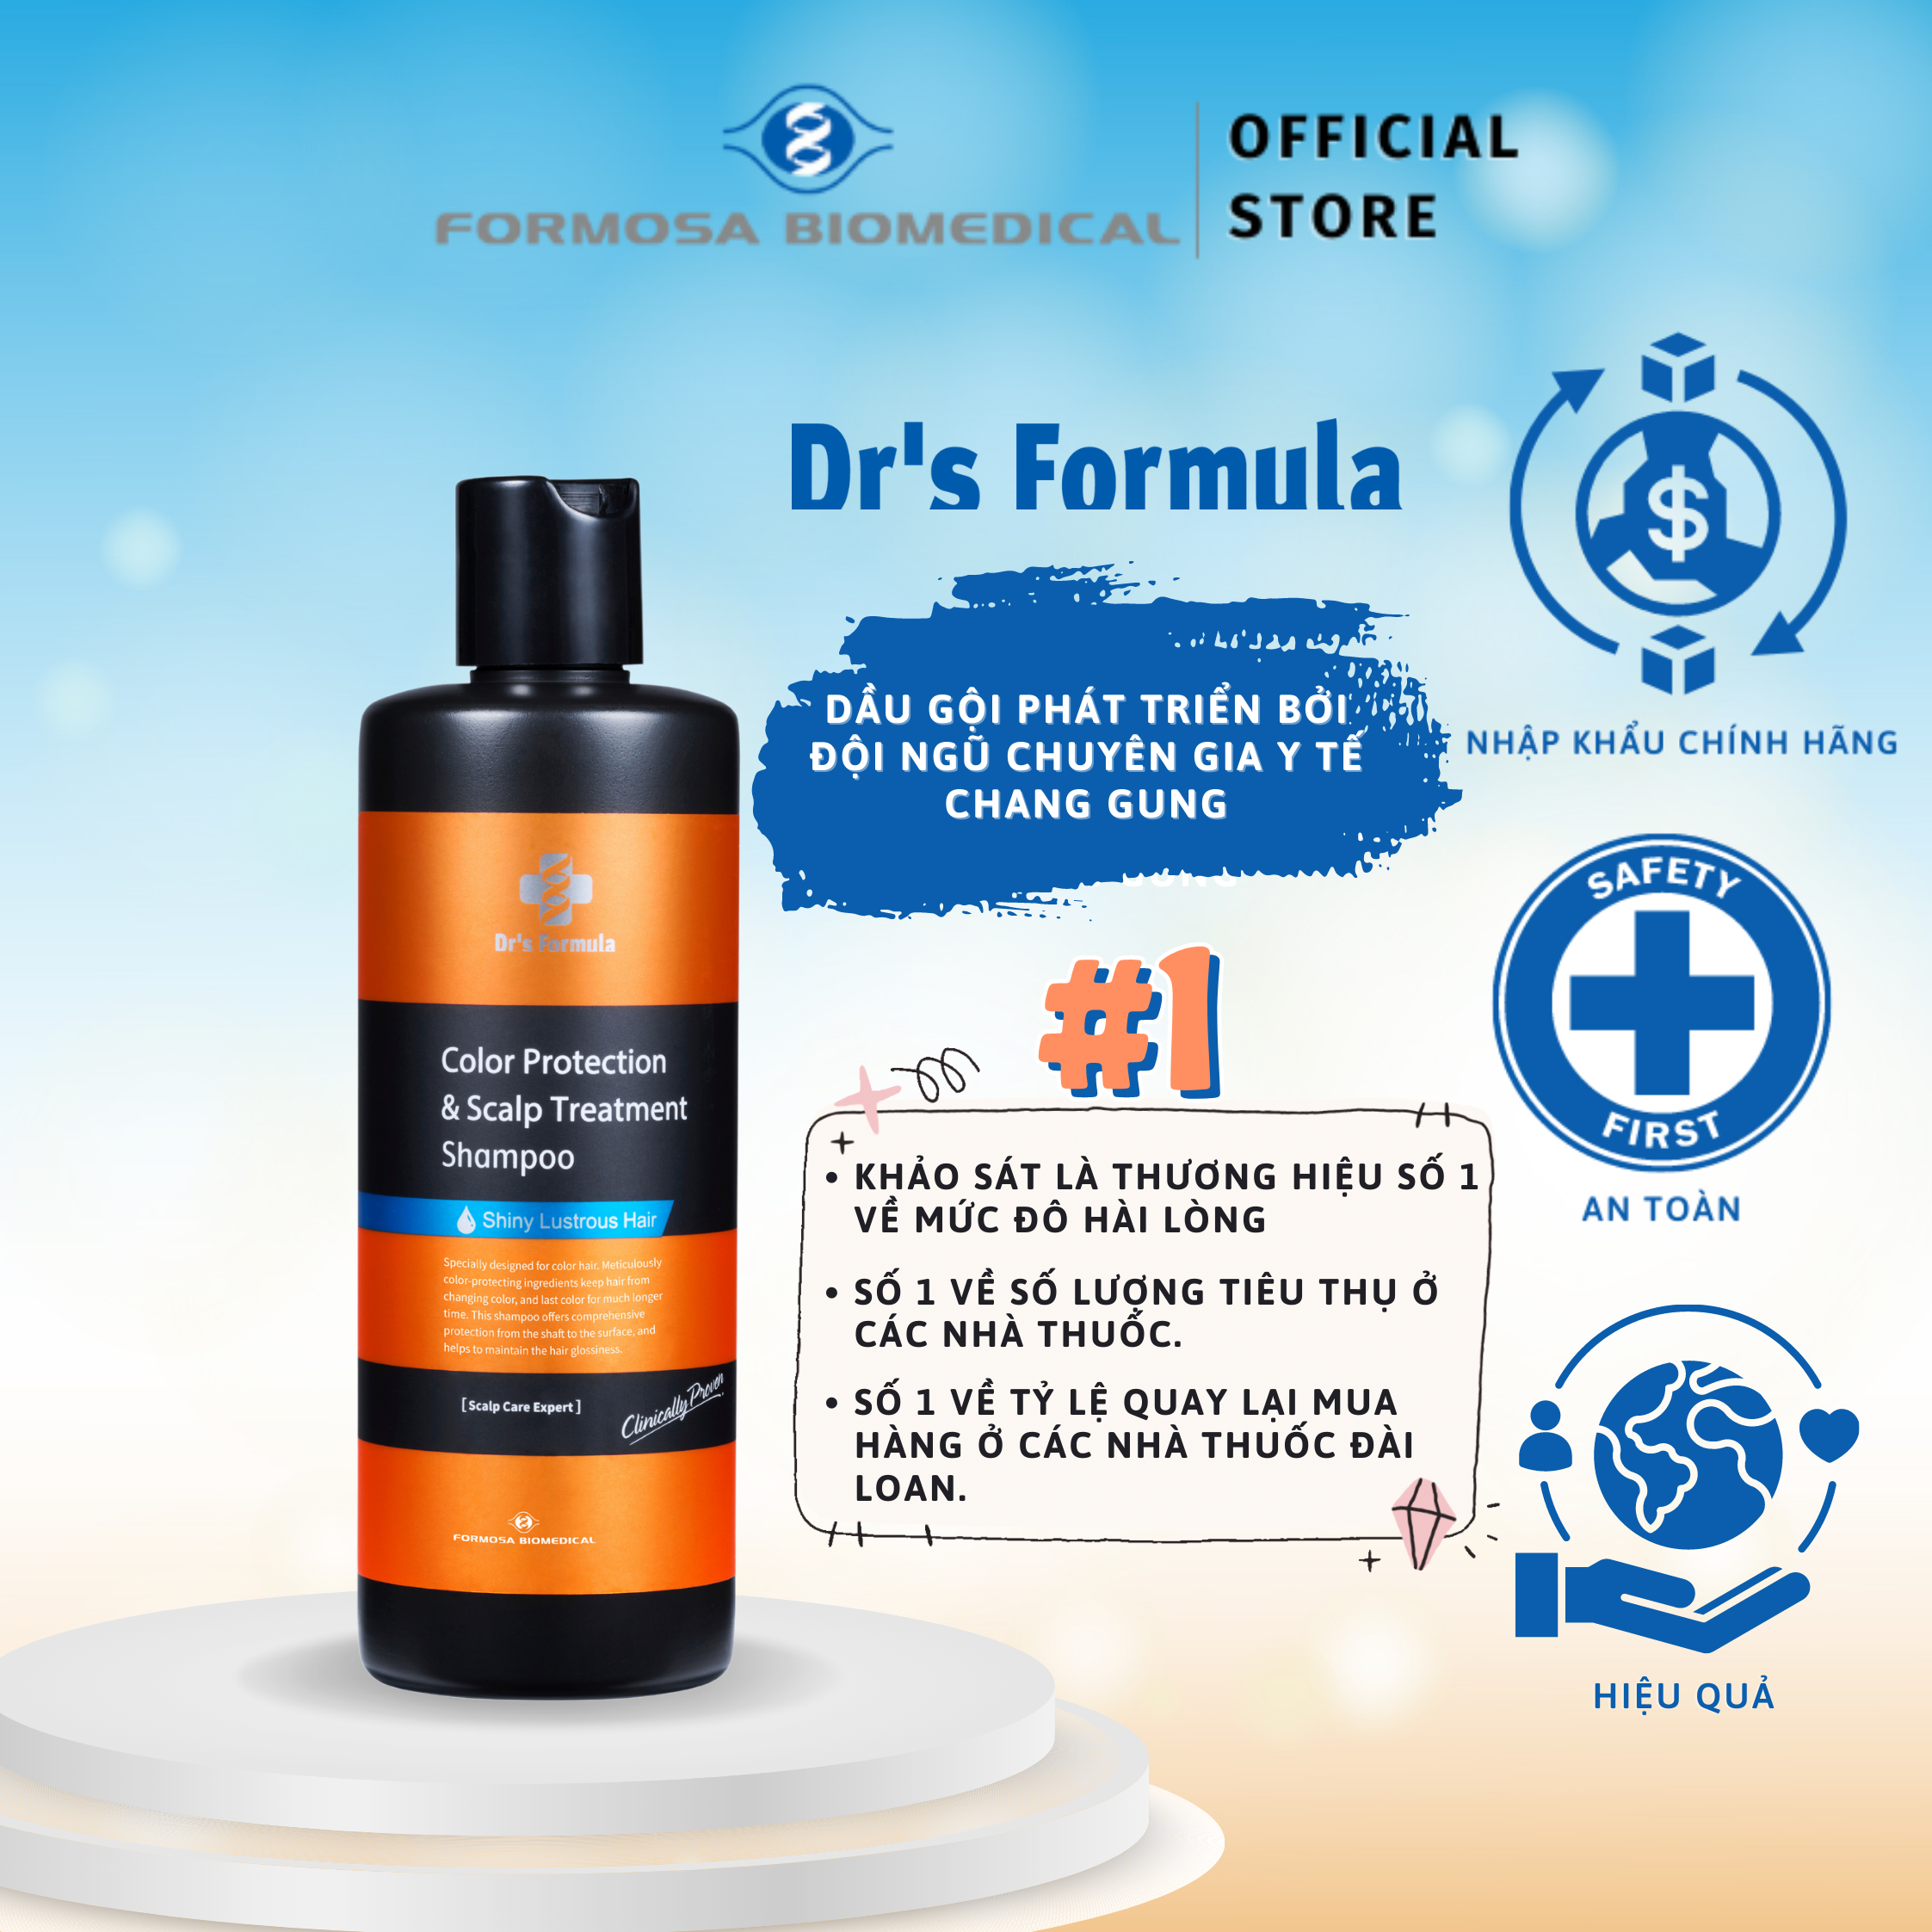 Dầu gội chăm sóc tóc nhuộm Dr's Formula Color Fixing & Scalp Treatment Shampoo giữ màu tóc lâu, chống phai màu